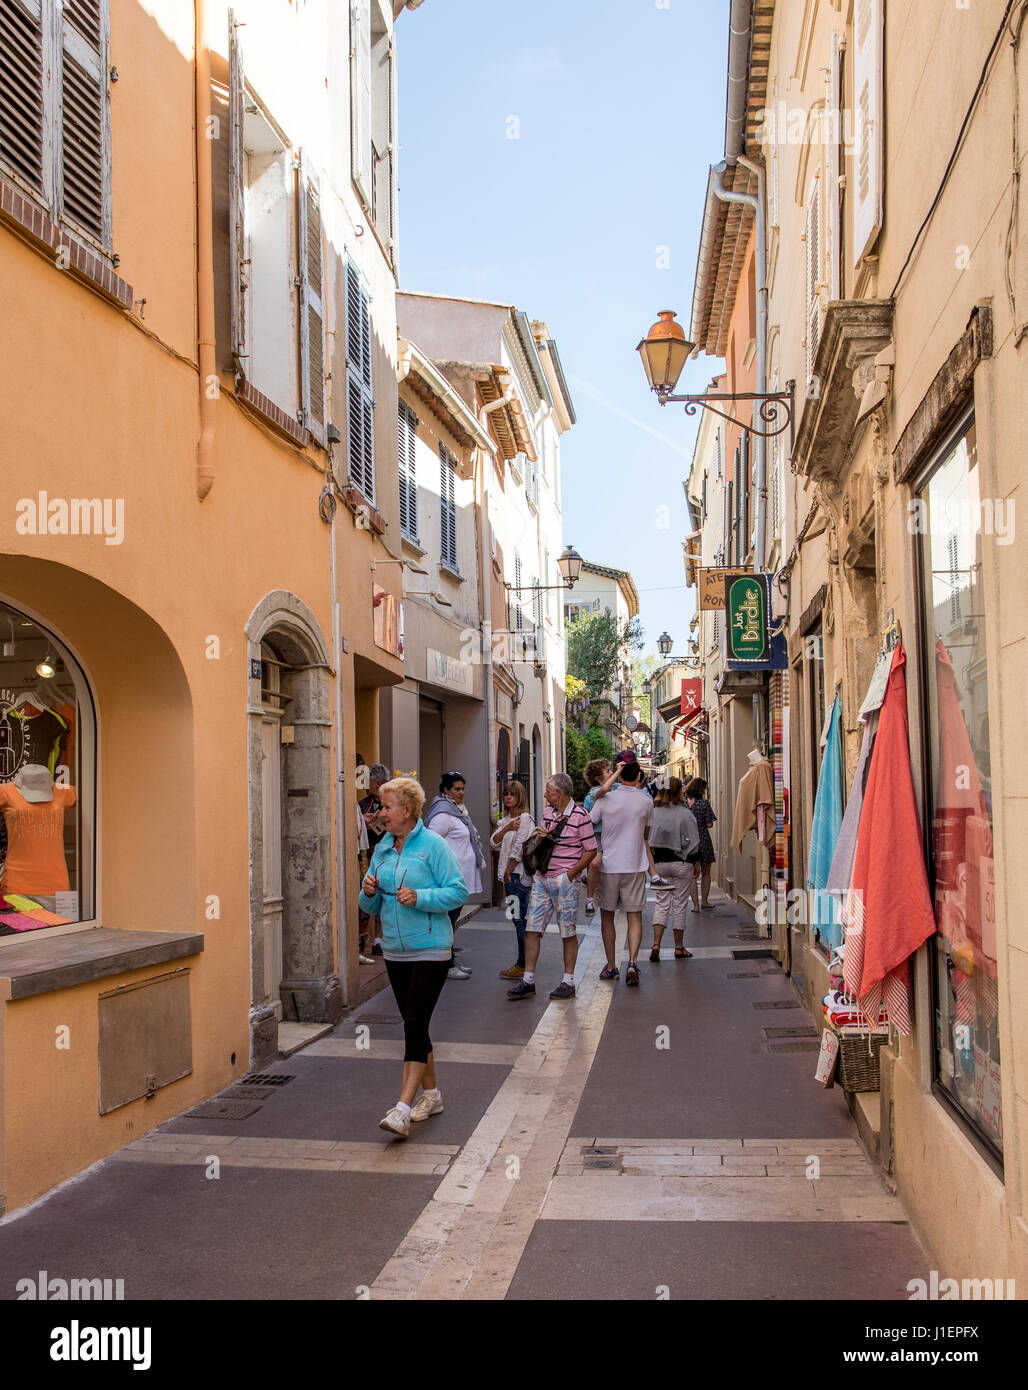 Hermes fashion store in ST Tropez, Var et Cote d'Azur, France Stock Photo -  Alamy